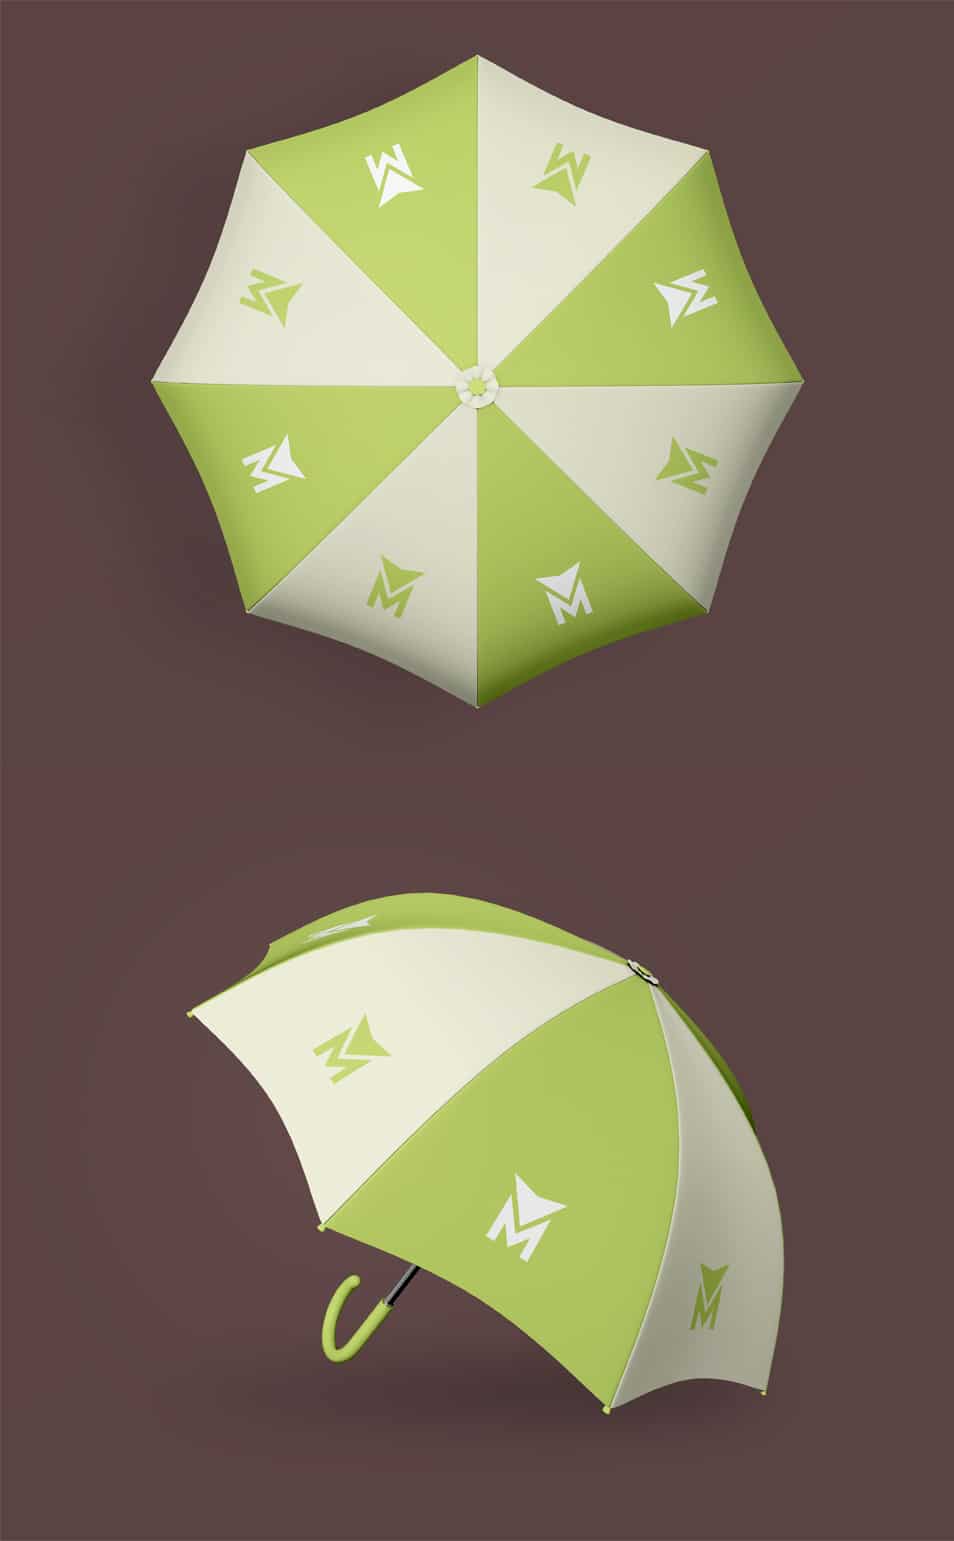 Umbrella 2 Free PSD Mockups